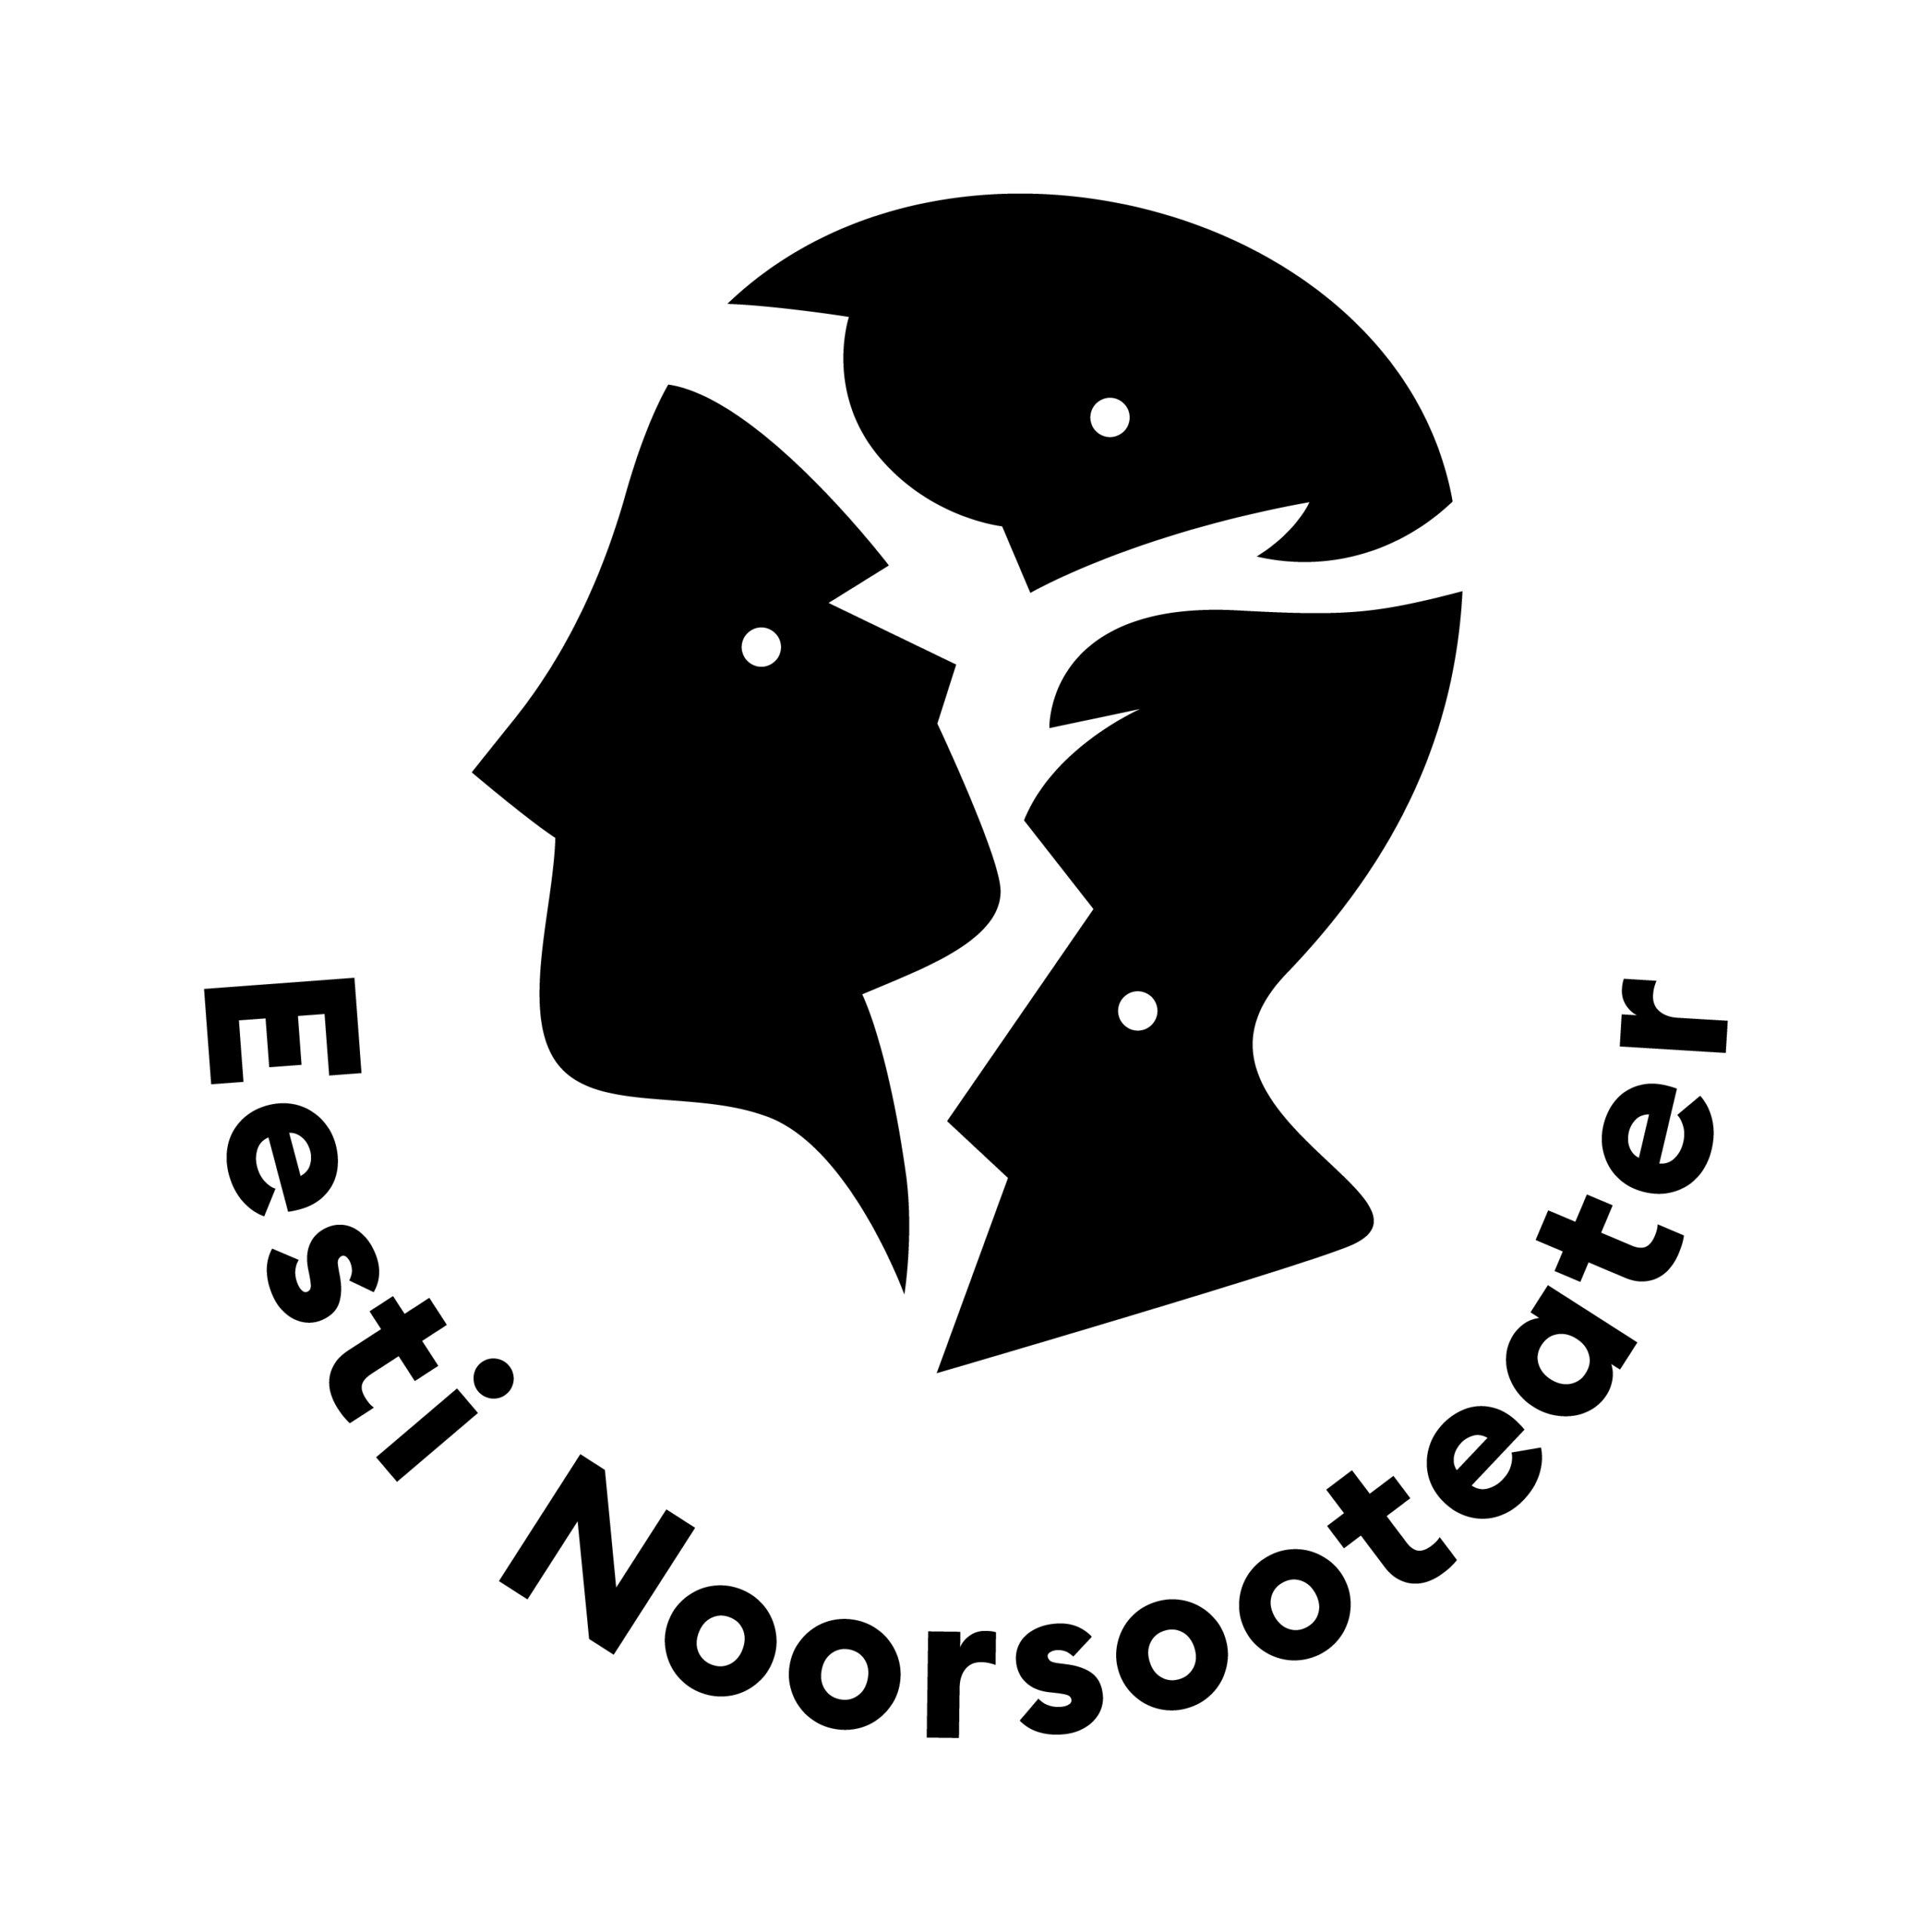 Pildil on Eesti Noorsooteatri logo, mille ülaosas on vasakul vaatav nägu, mis omakorda moodustub kolmest samuti küljele vaatavast näost. Allpool on kaarena kirjas "Eesti Noorsooteater".